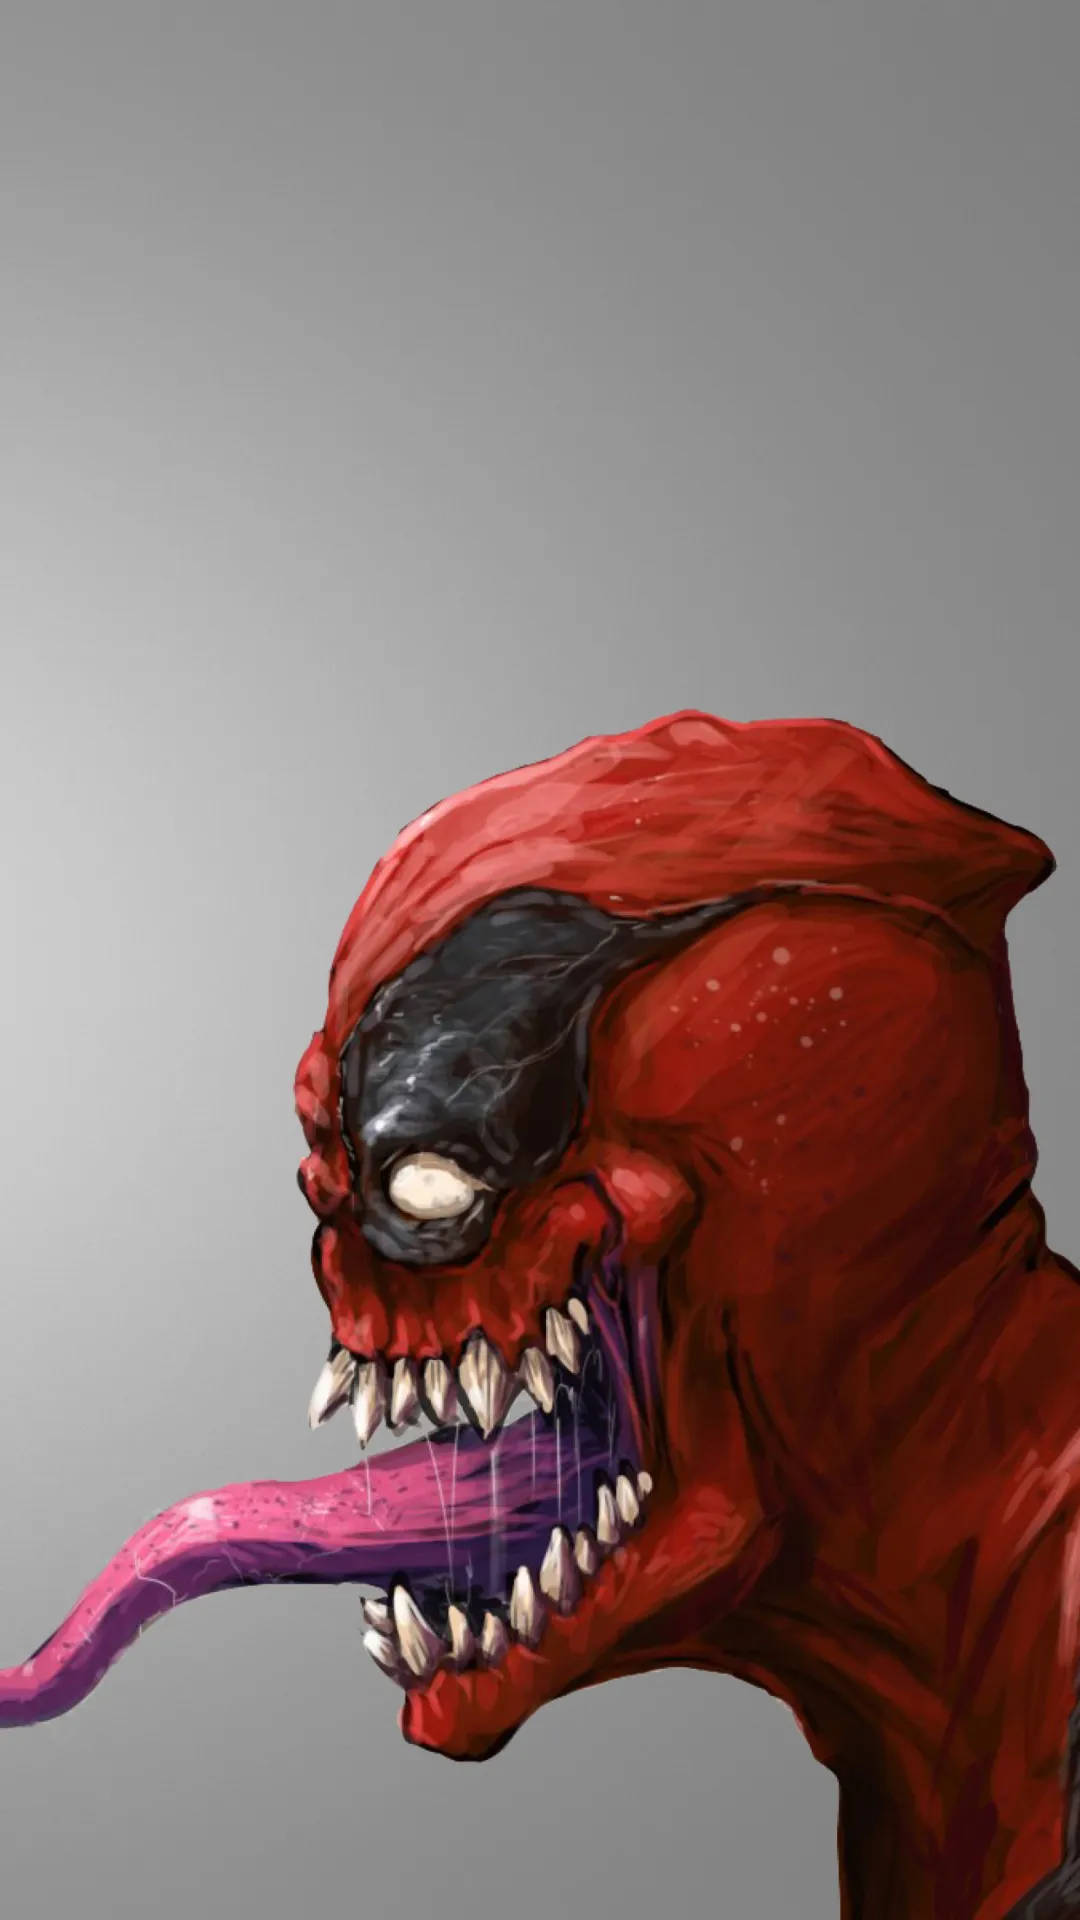 Tapeterdeadpool Venom Superhjälte Iphone Wallpaper